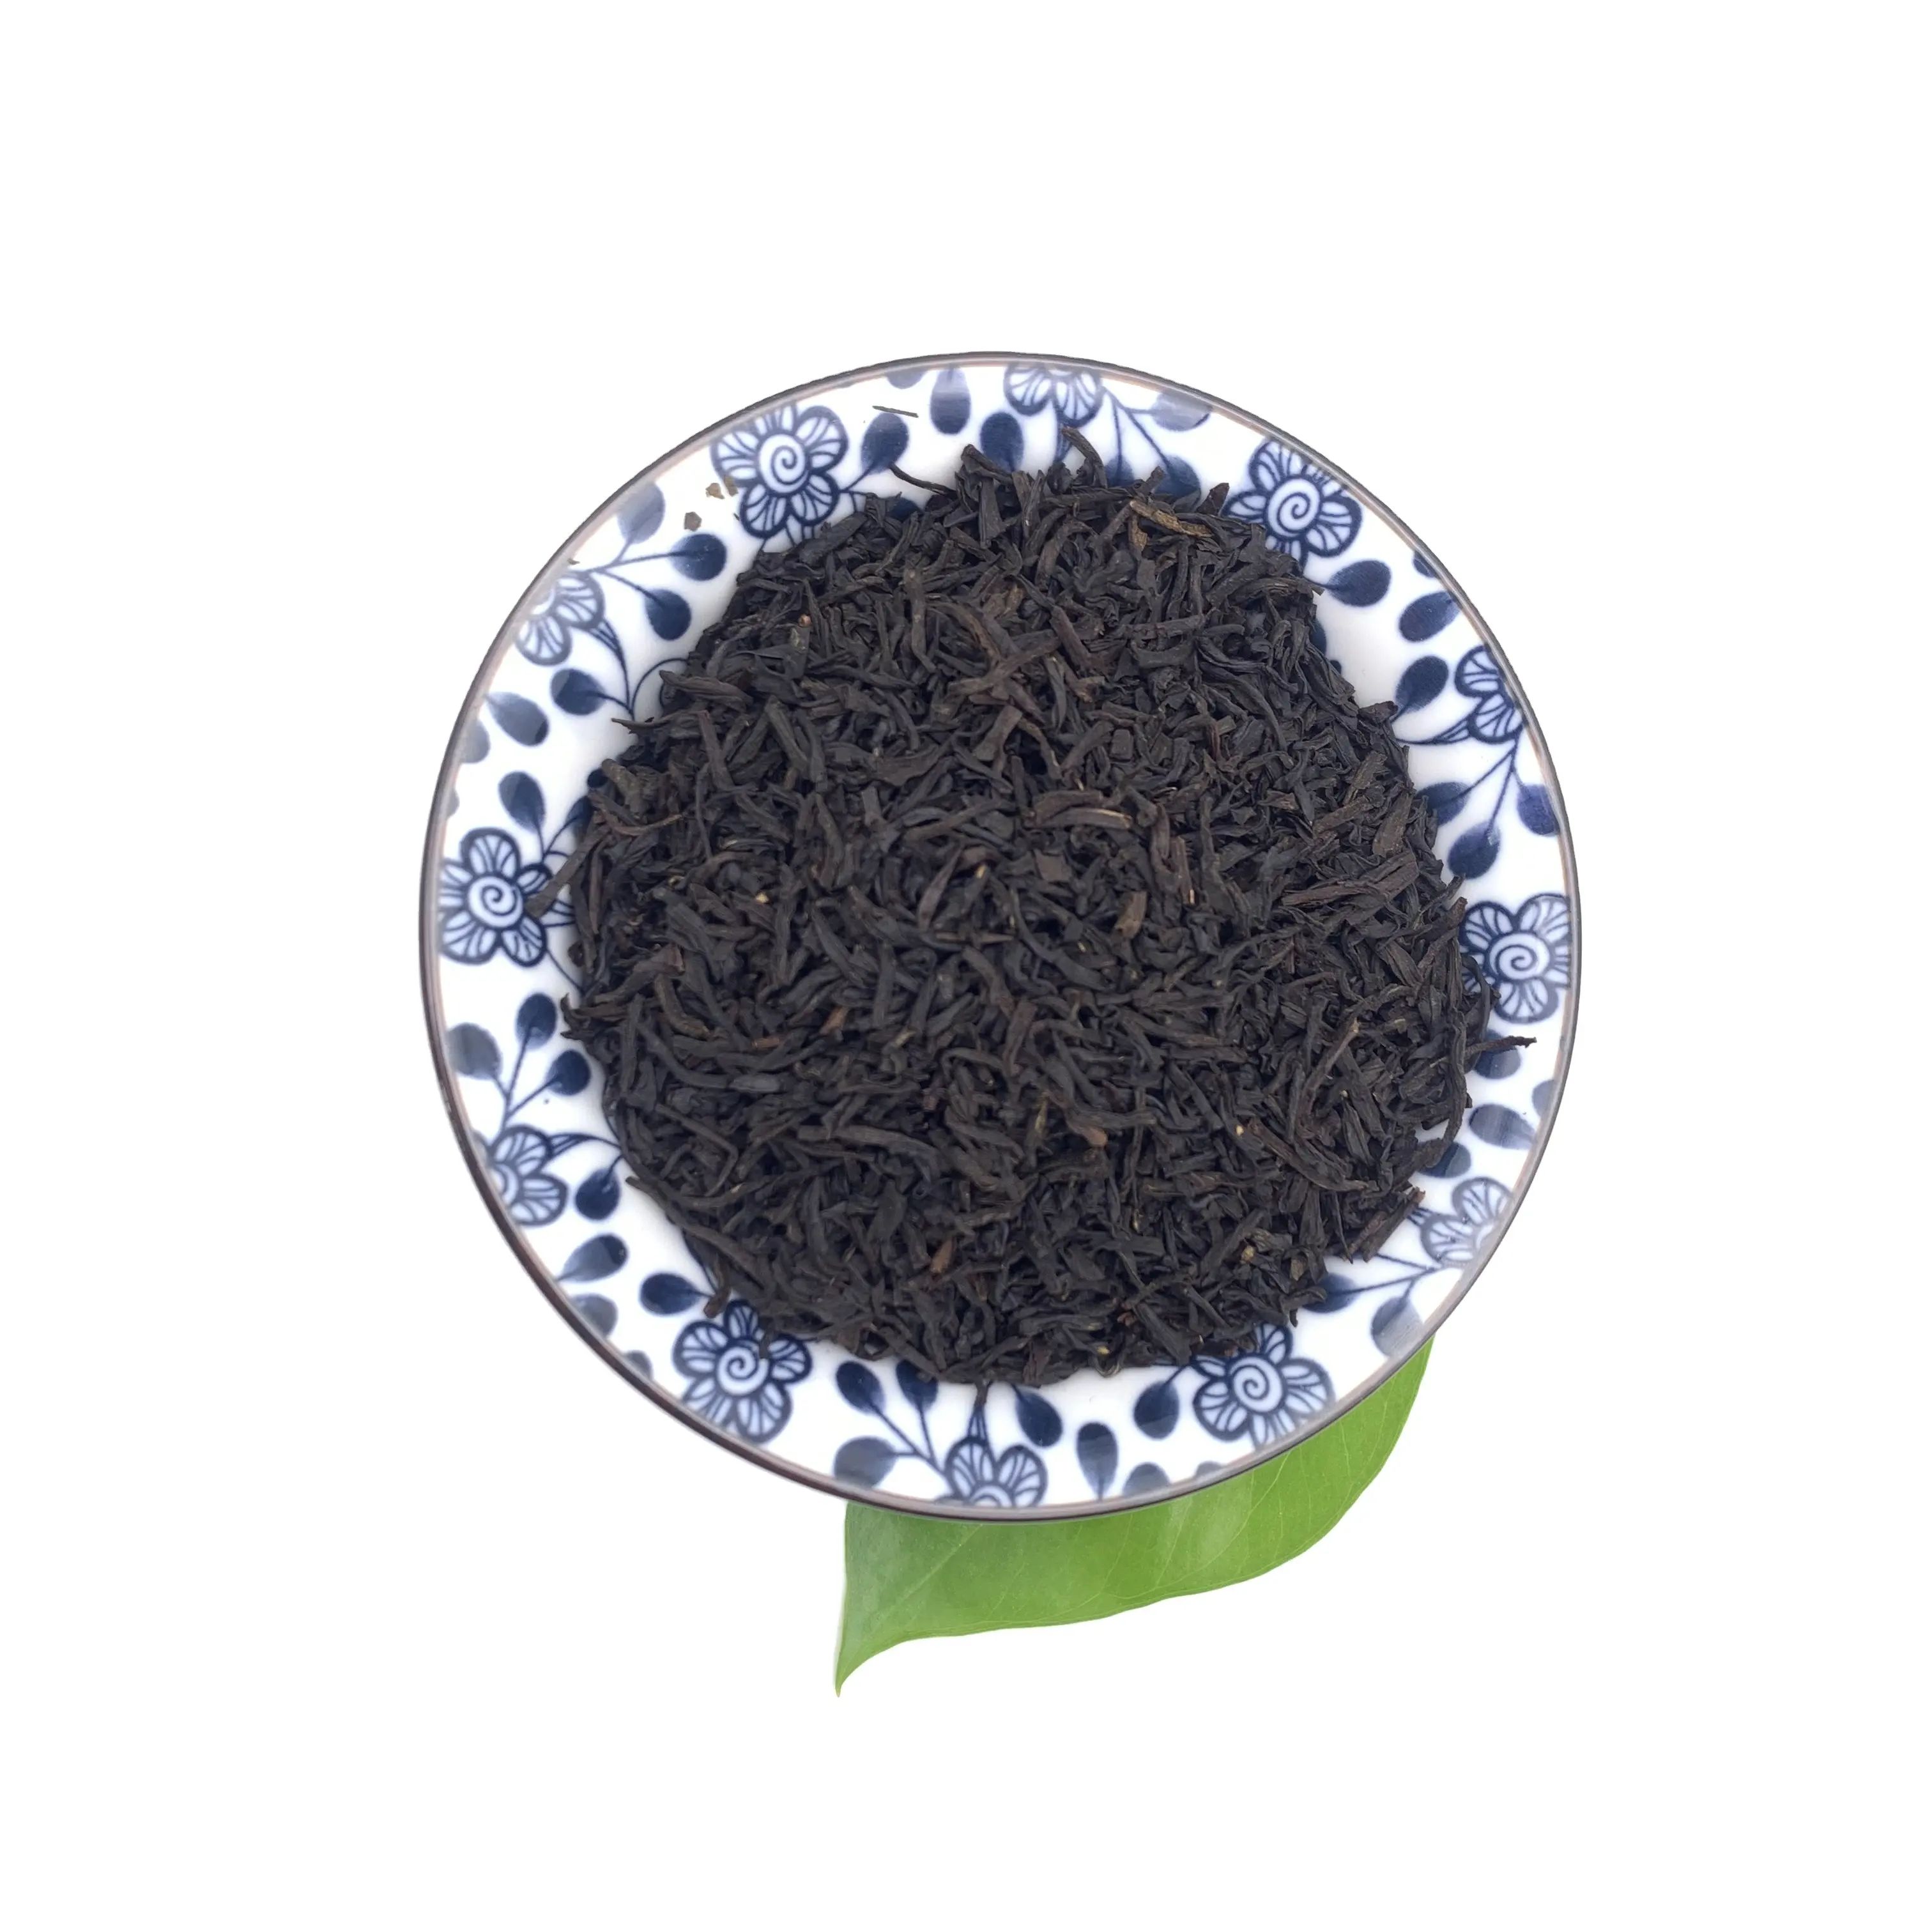 Marcas de preço competitivo preto chá preto no.1, chá chinês orgânico preto